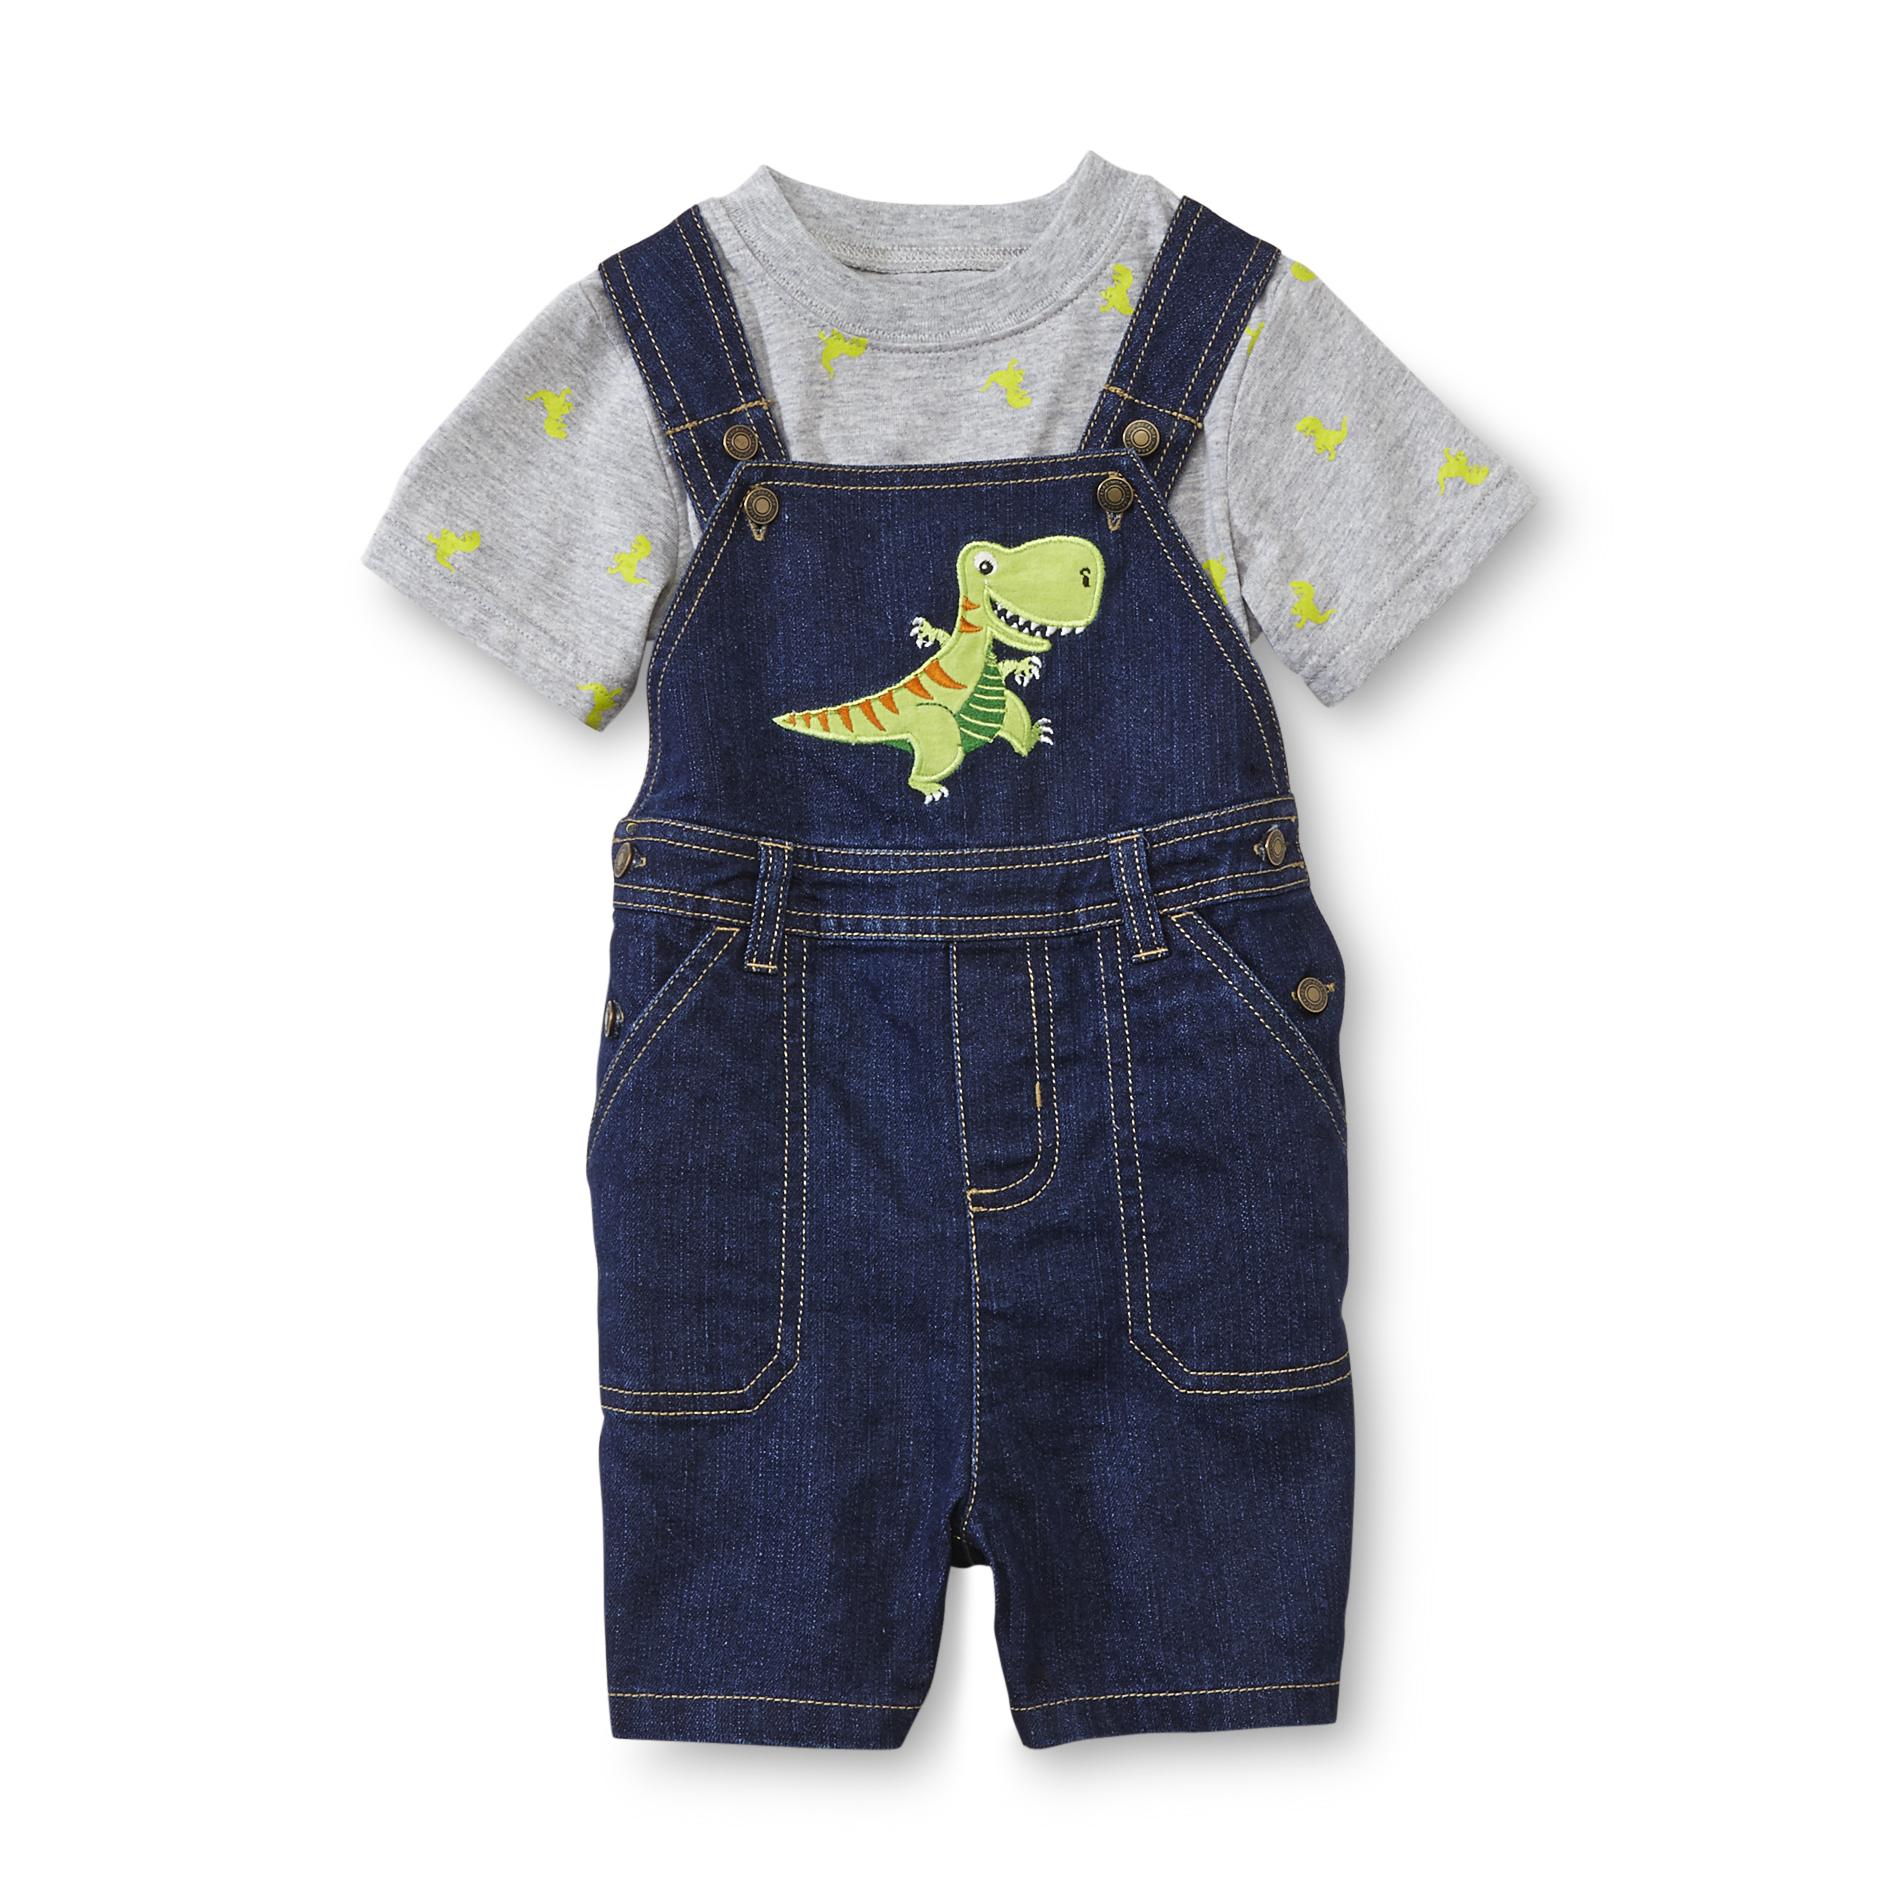 WonderKids Infant Boy's T-Shirt & Shortalls - T-Rex